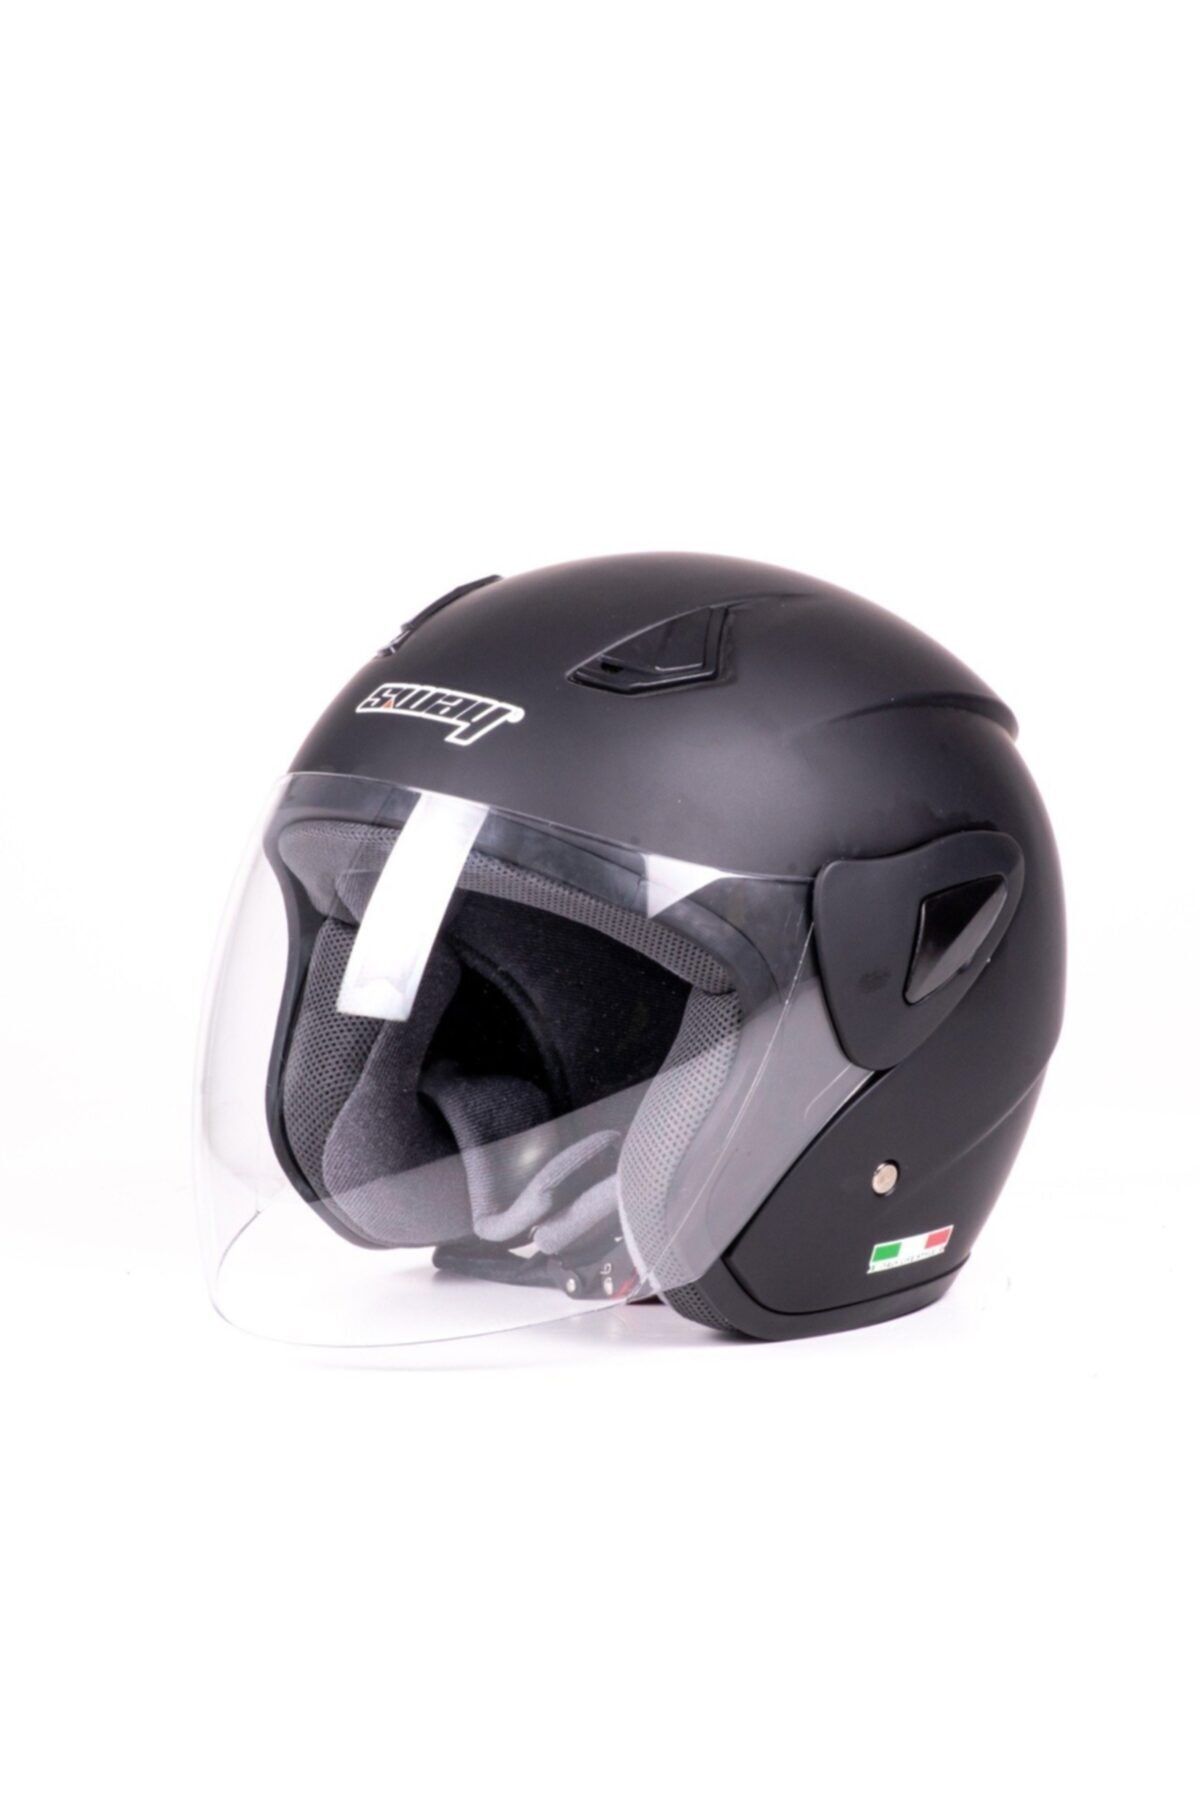 Helmet S Sway 700 Yarı Camlı Kask Matt Siyah Ce Güvenlik Sertifikalı-xs